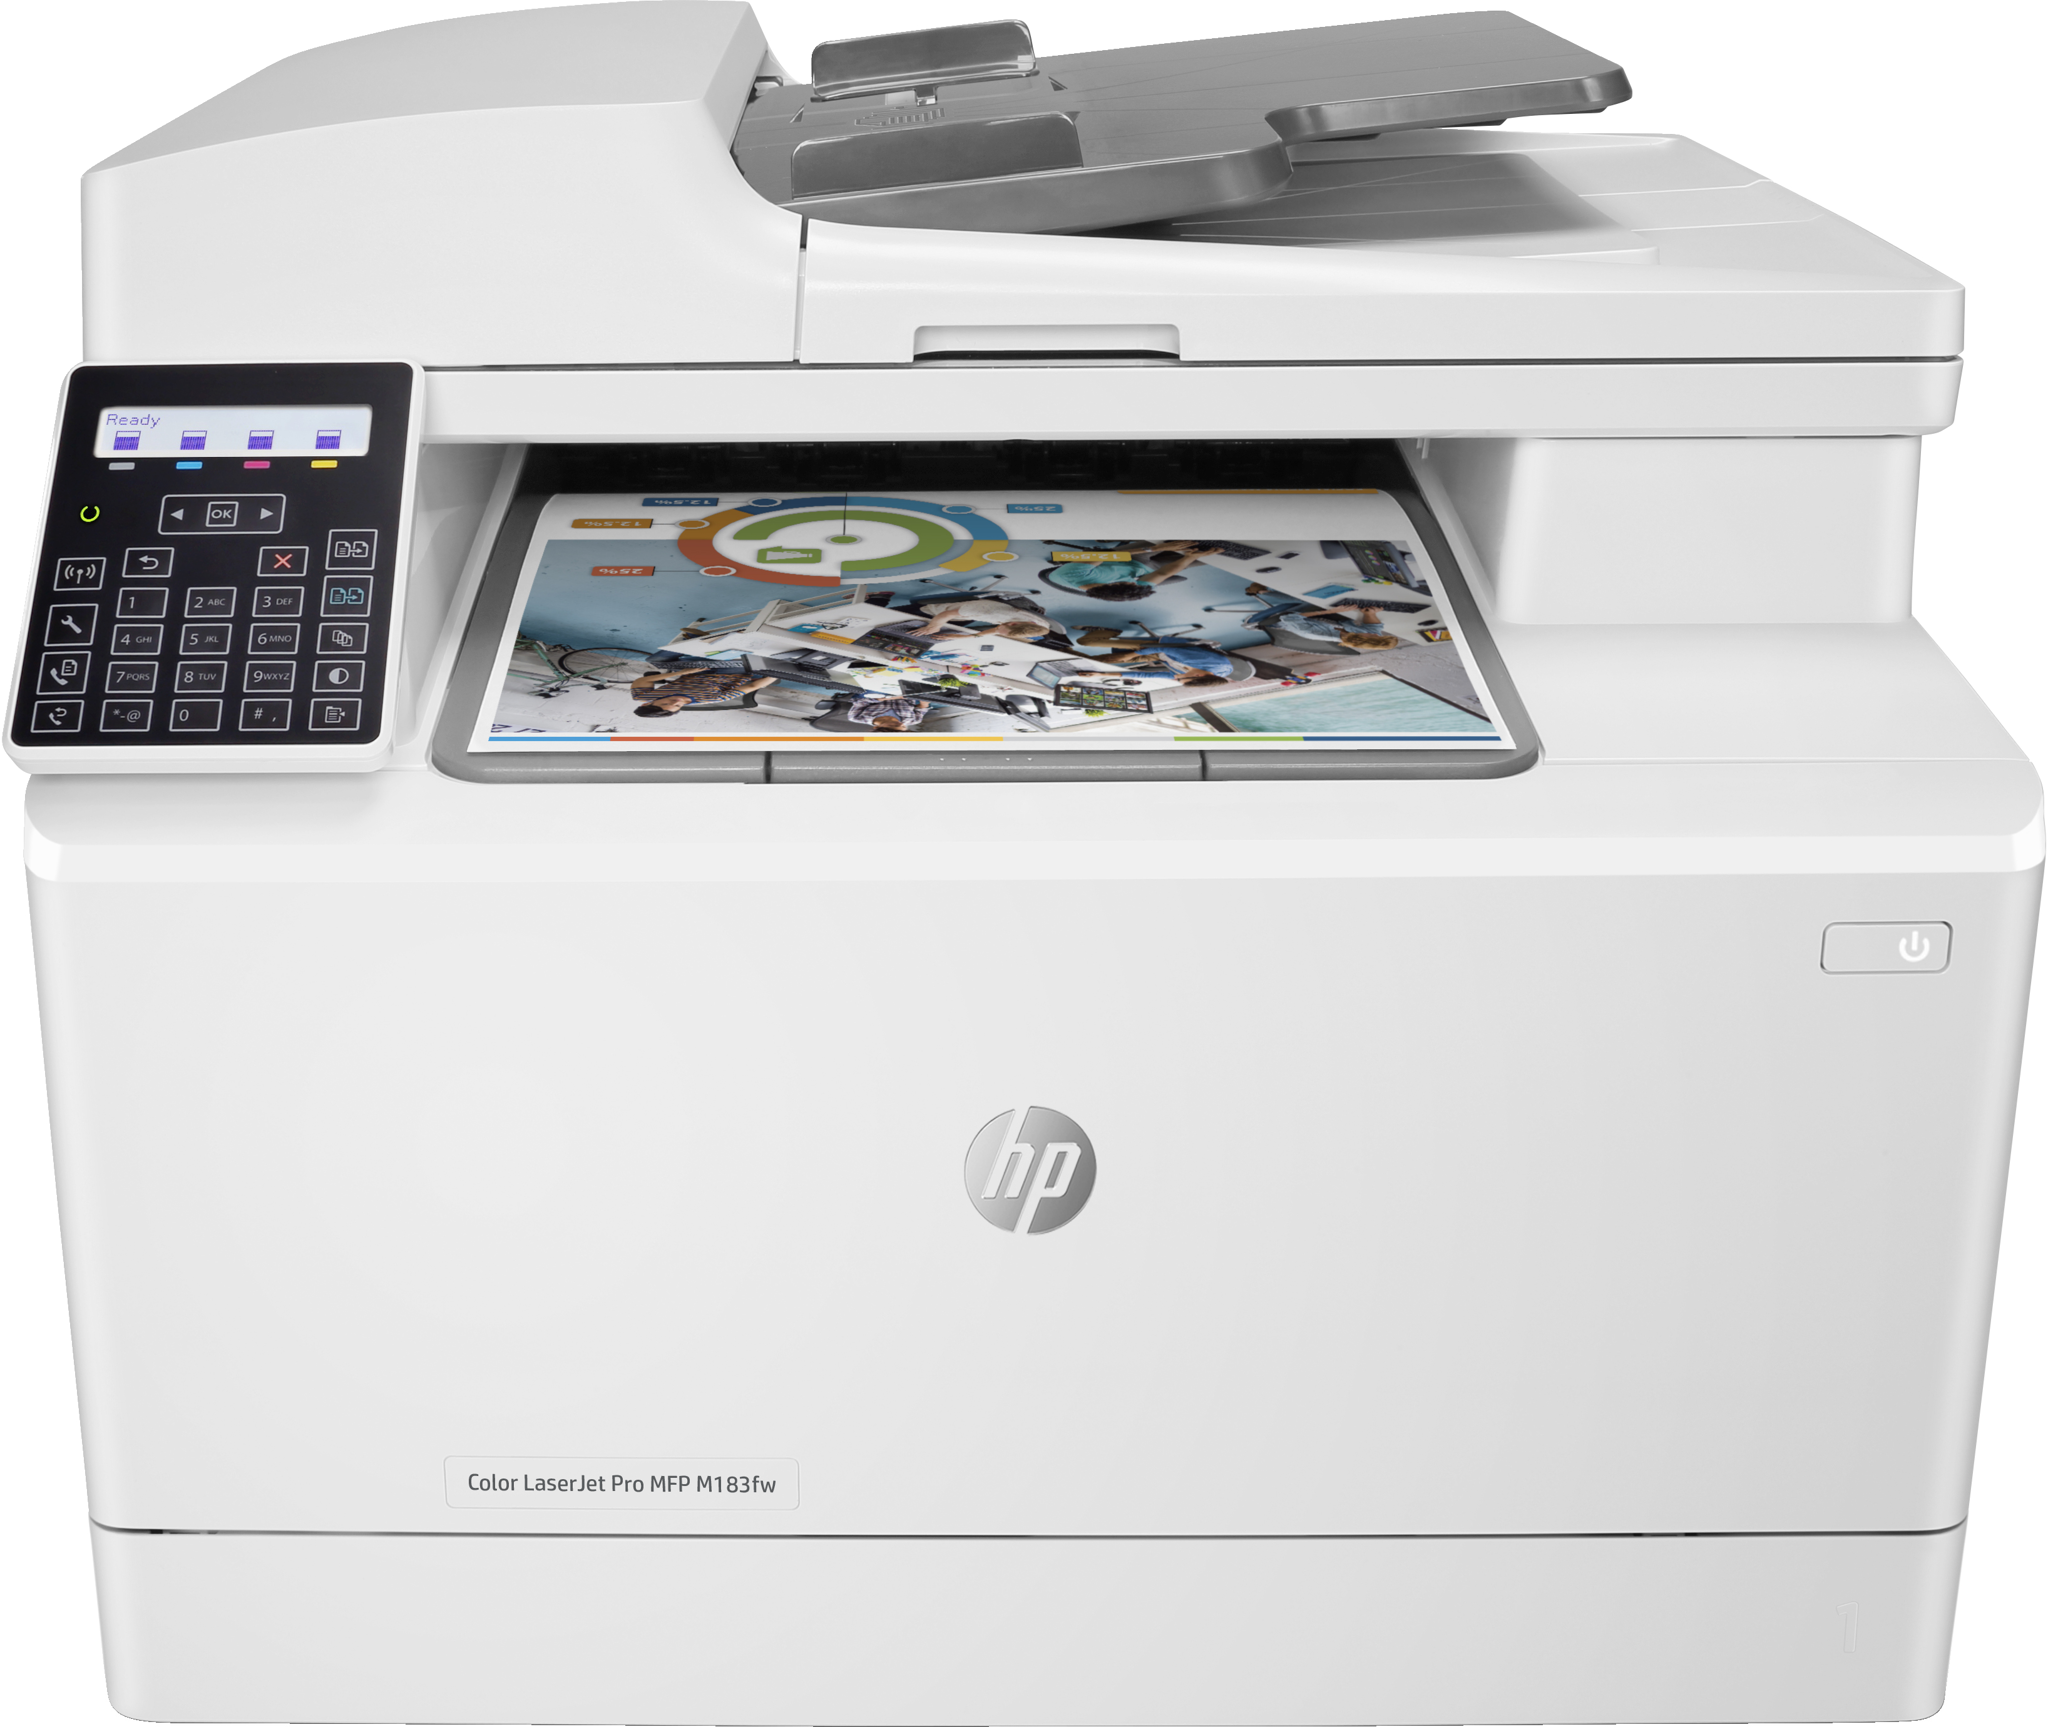 Bild von HP Color LaserJet Pro MFP M183fw - Drucken - Kopieren - Scannen - Faxen - Automatische Dokumentenzuführung für 35 Blatt; Energieeffizient; Hohe Sicherheit; Dualband Wi-Fi - Laser - Farbdruck - 600 x 600 DPI - A4 - Direktdruck - Weiß